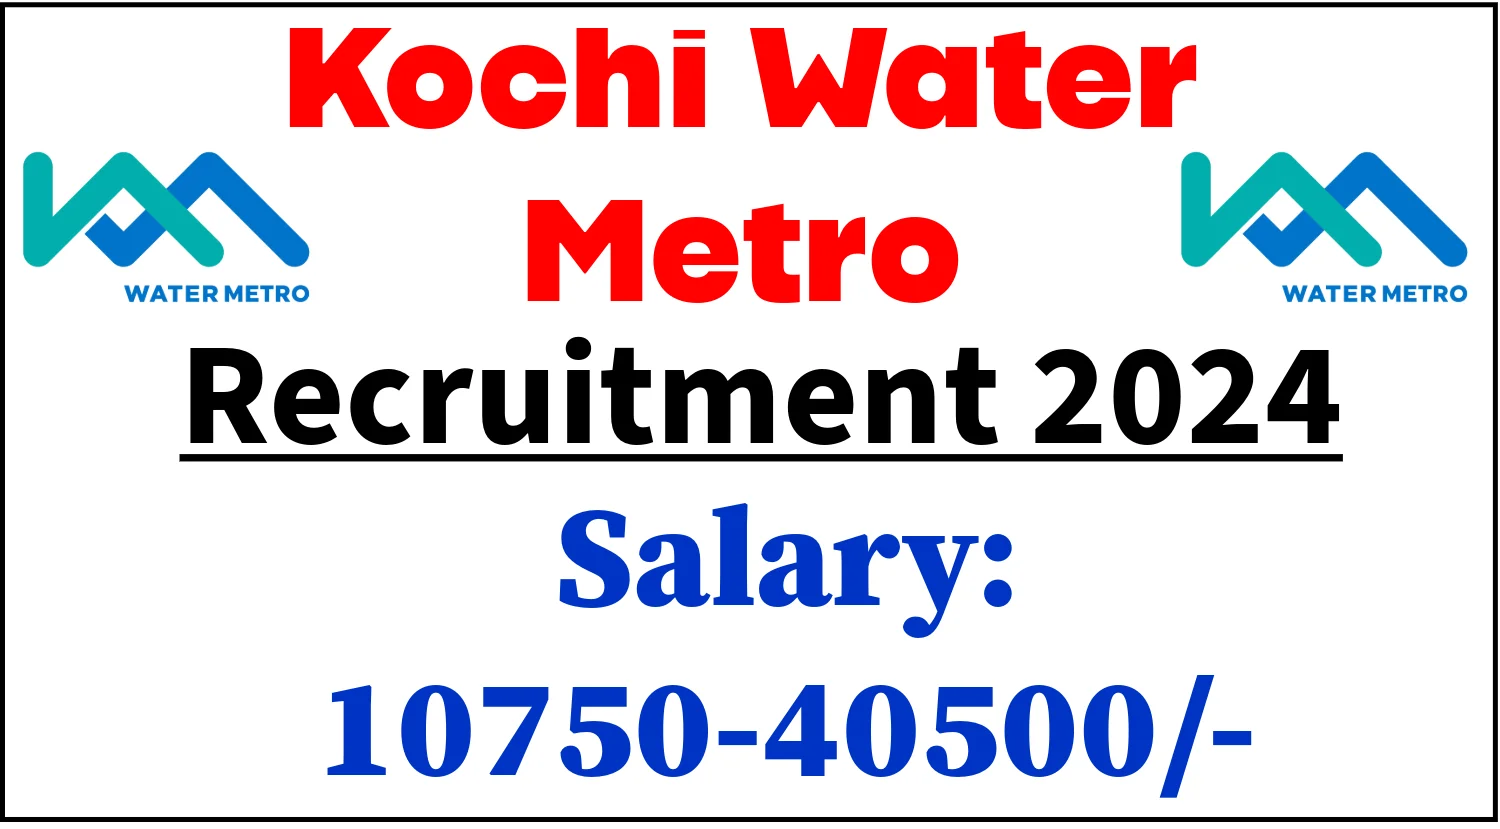 Kochi Water Metro Recruitment 2024